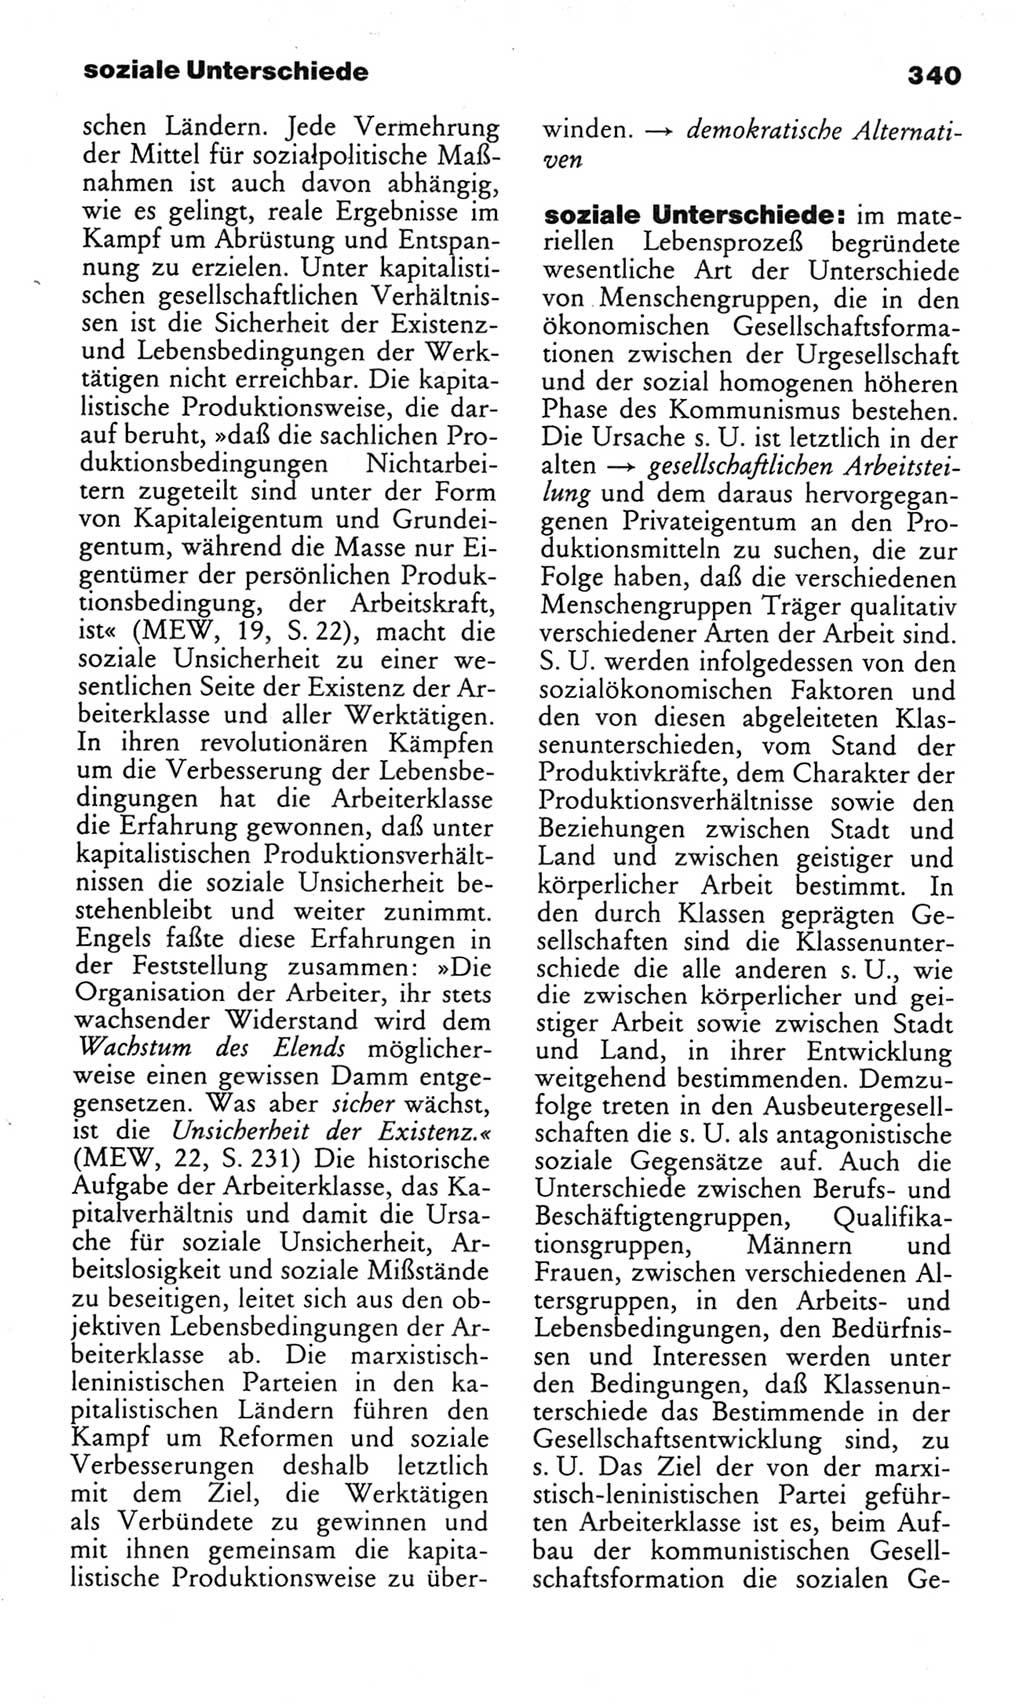 Wörterbuch des wissenschaftlichen Kommunismus [Deutsche Demokratische Republik (DDR)] 1982, Seite 340 (Wb. wiss. Komm. DDR 1982, S. 340)